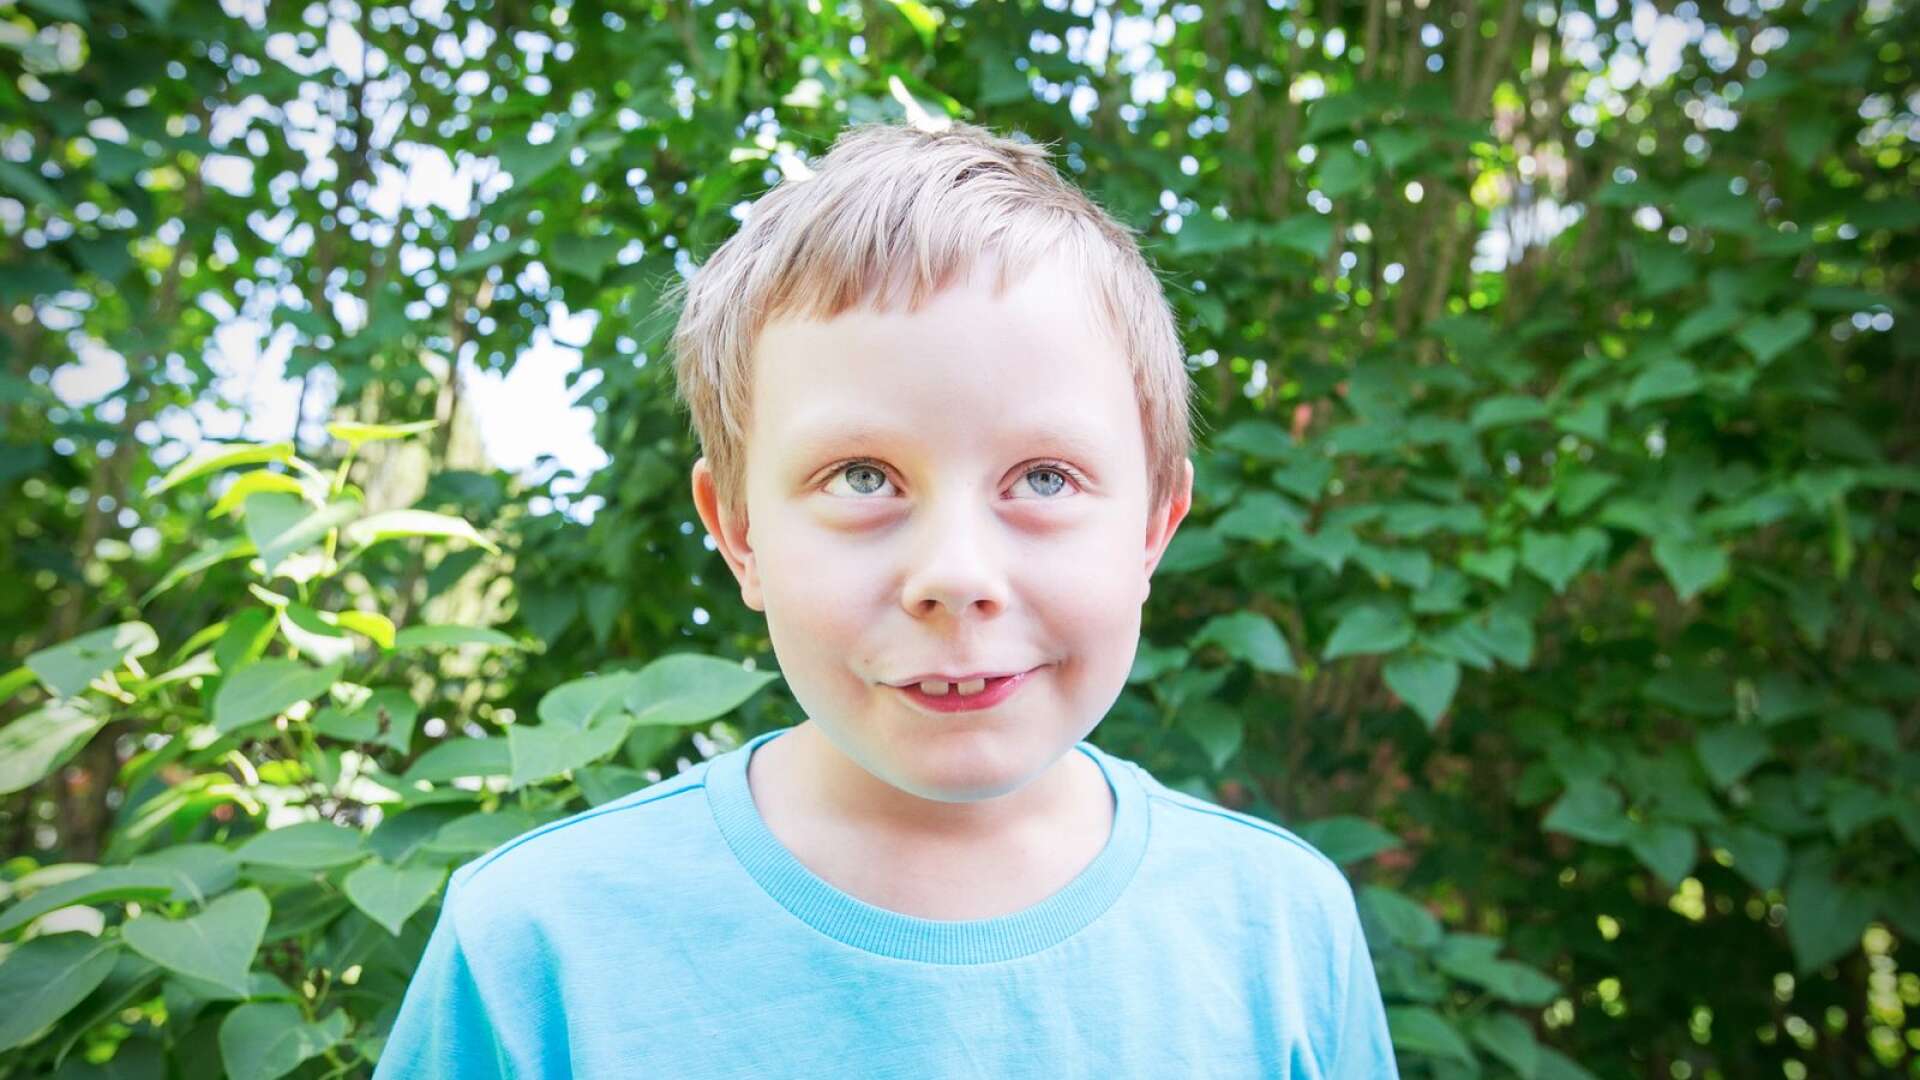 Nioåriga Petter har immunbristsjukdomen Brutons. Innan man upptäckte sjukdomen var han konstant sjuk men idag kan han, tack vare mediciner, leva ett relativt friskt liv.